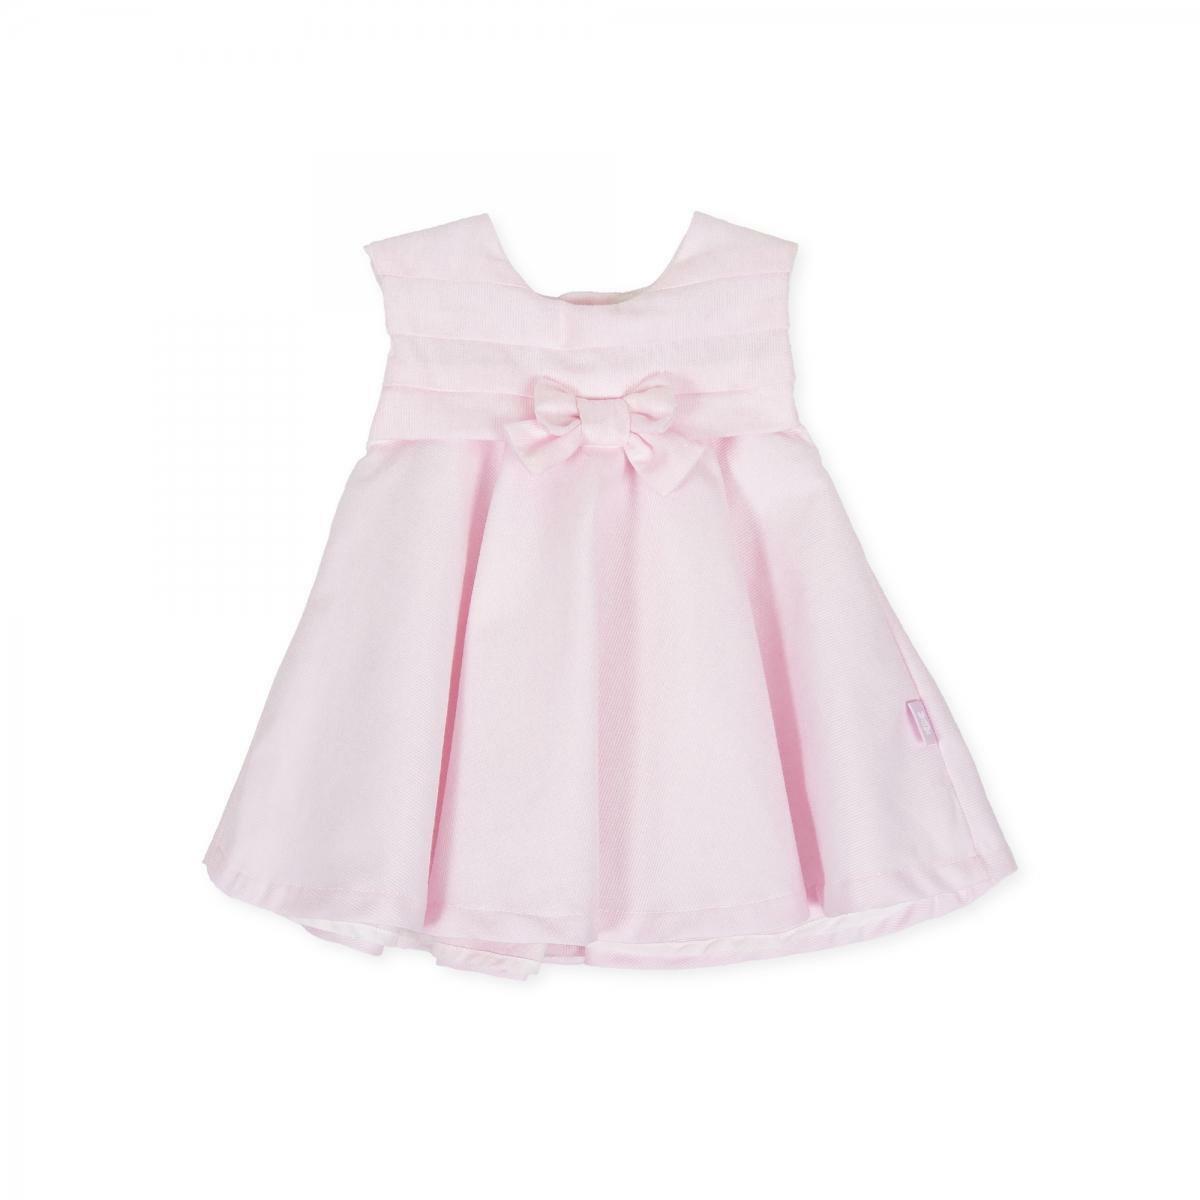 tutto piccolo tutto piccolo vestitino neonata rosa 8414s20